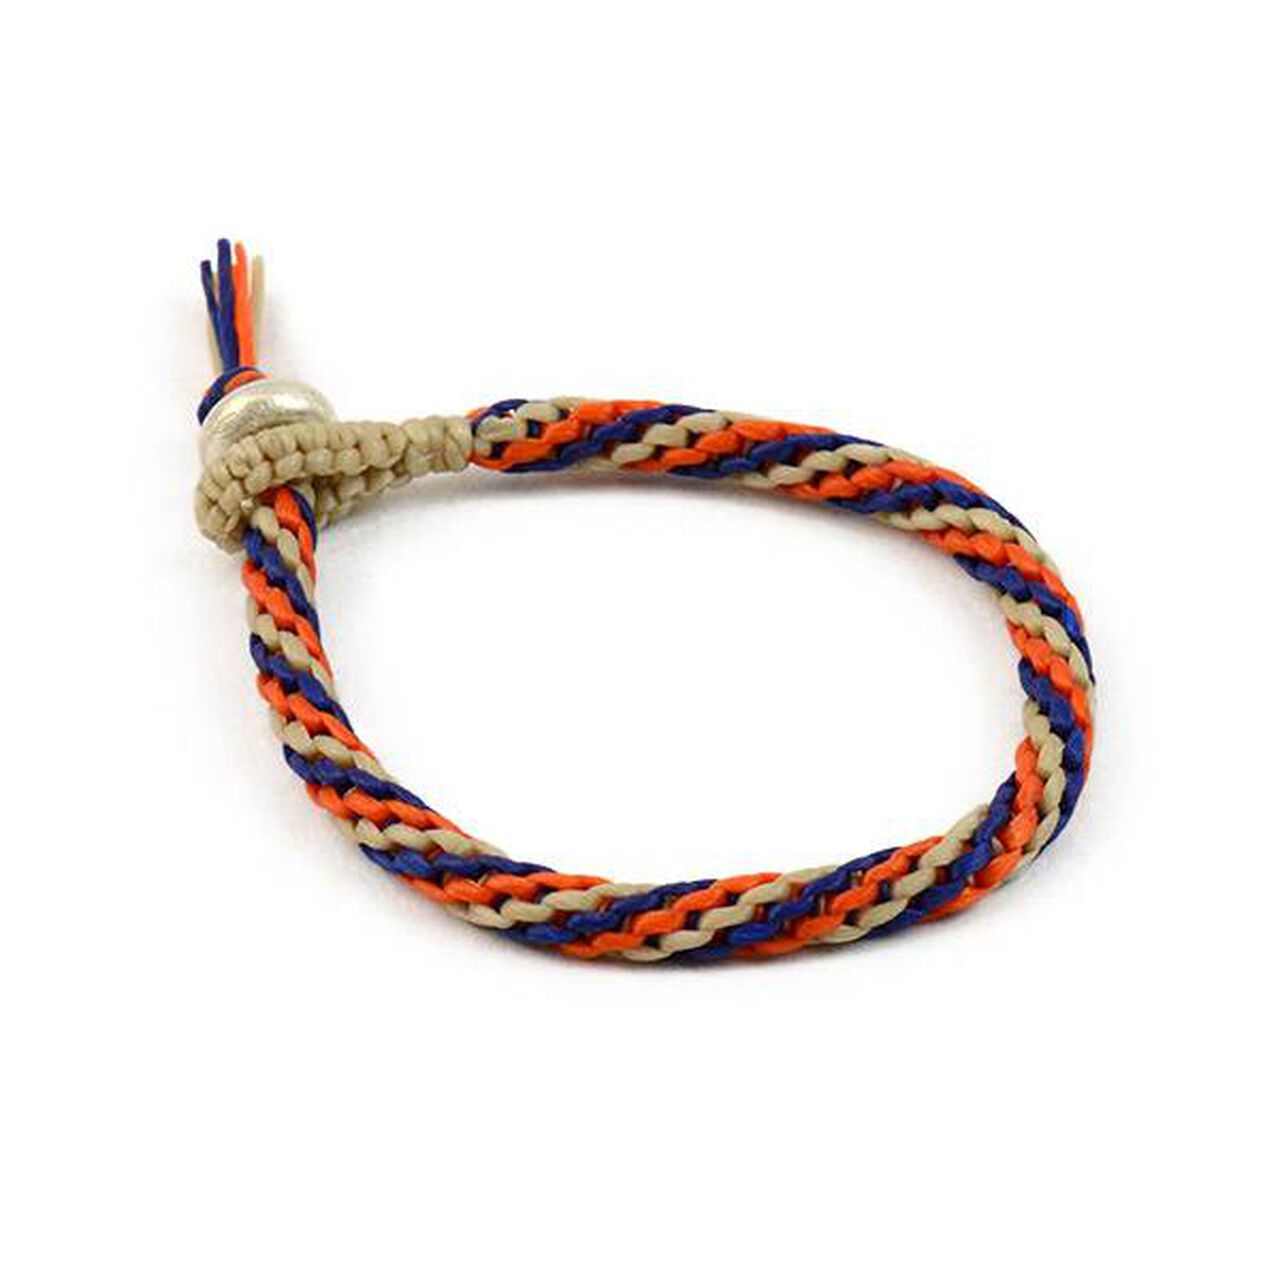 Spiral Coloured Braid Wax Cord Bracelet,Beige_Blue_Orange, large image number 0